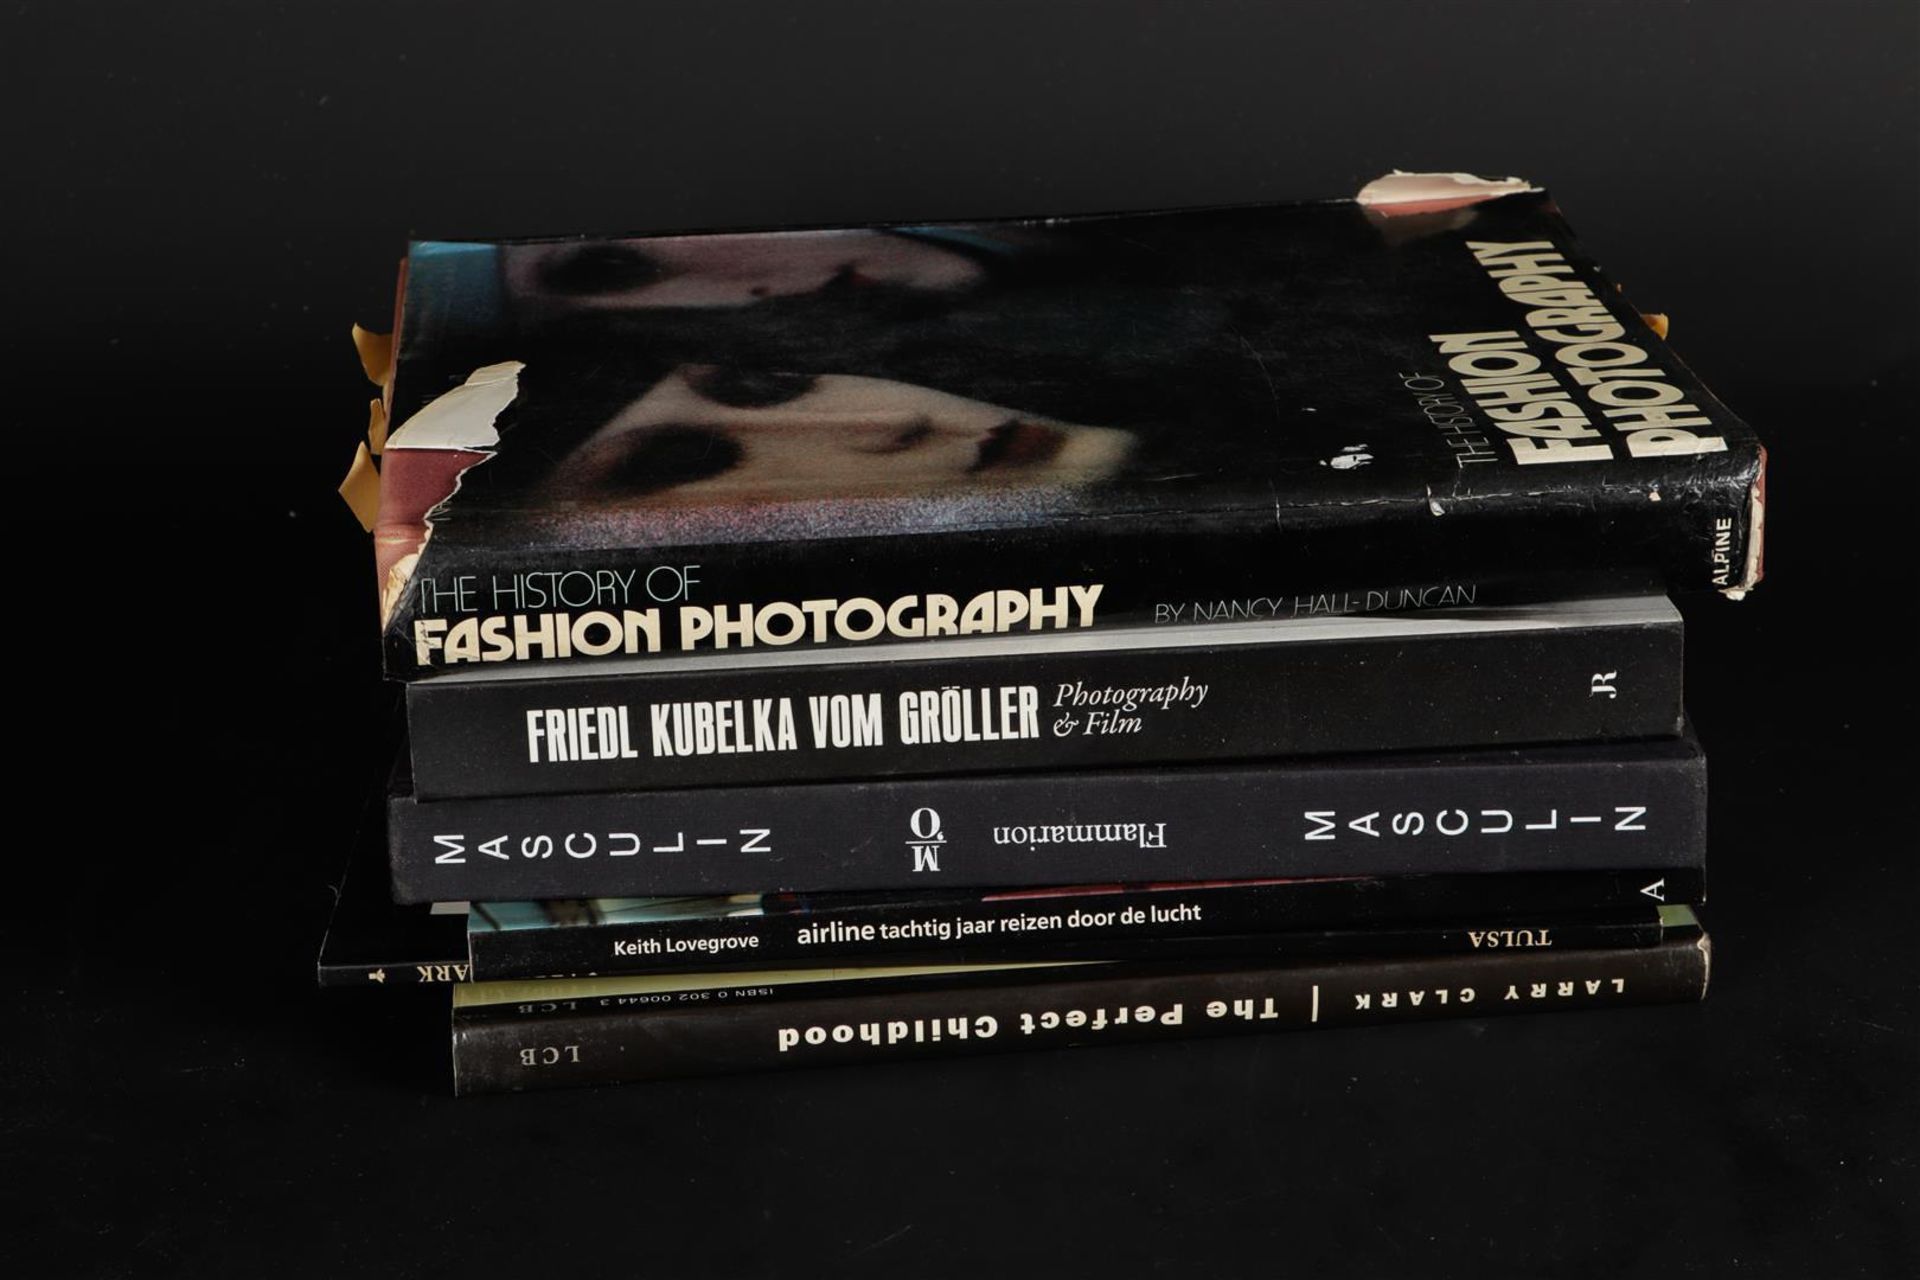 Collection of books including Friedl Kubelka vom Gröller: Photography &Film, 2013.